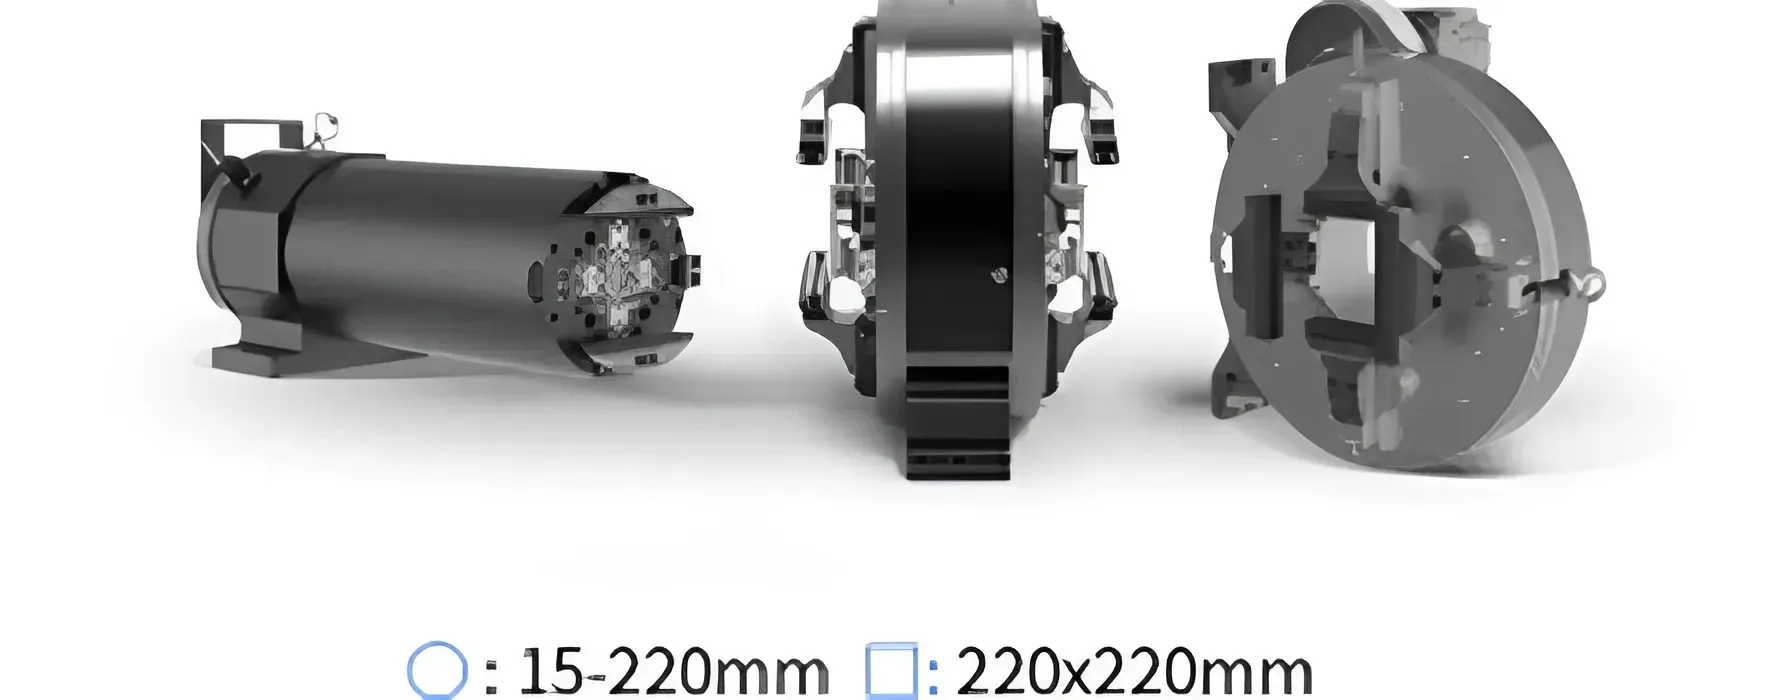 Универсальный пневматический патрон станок лазерной резки круглых и профильных труб LX-K22C от компании LongxinLaser